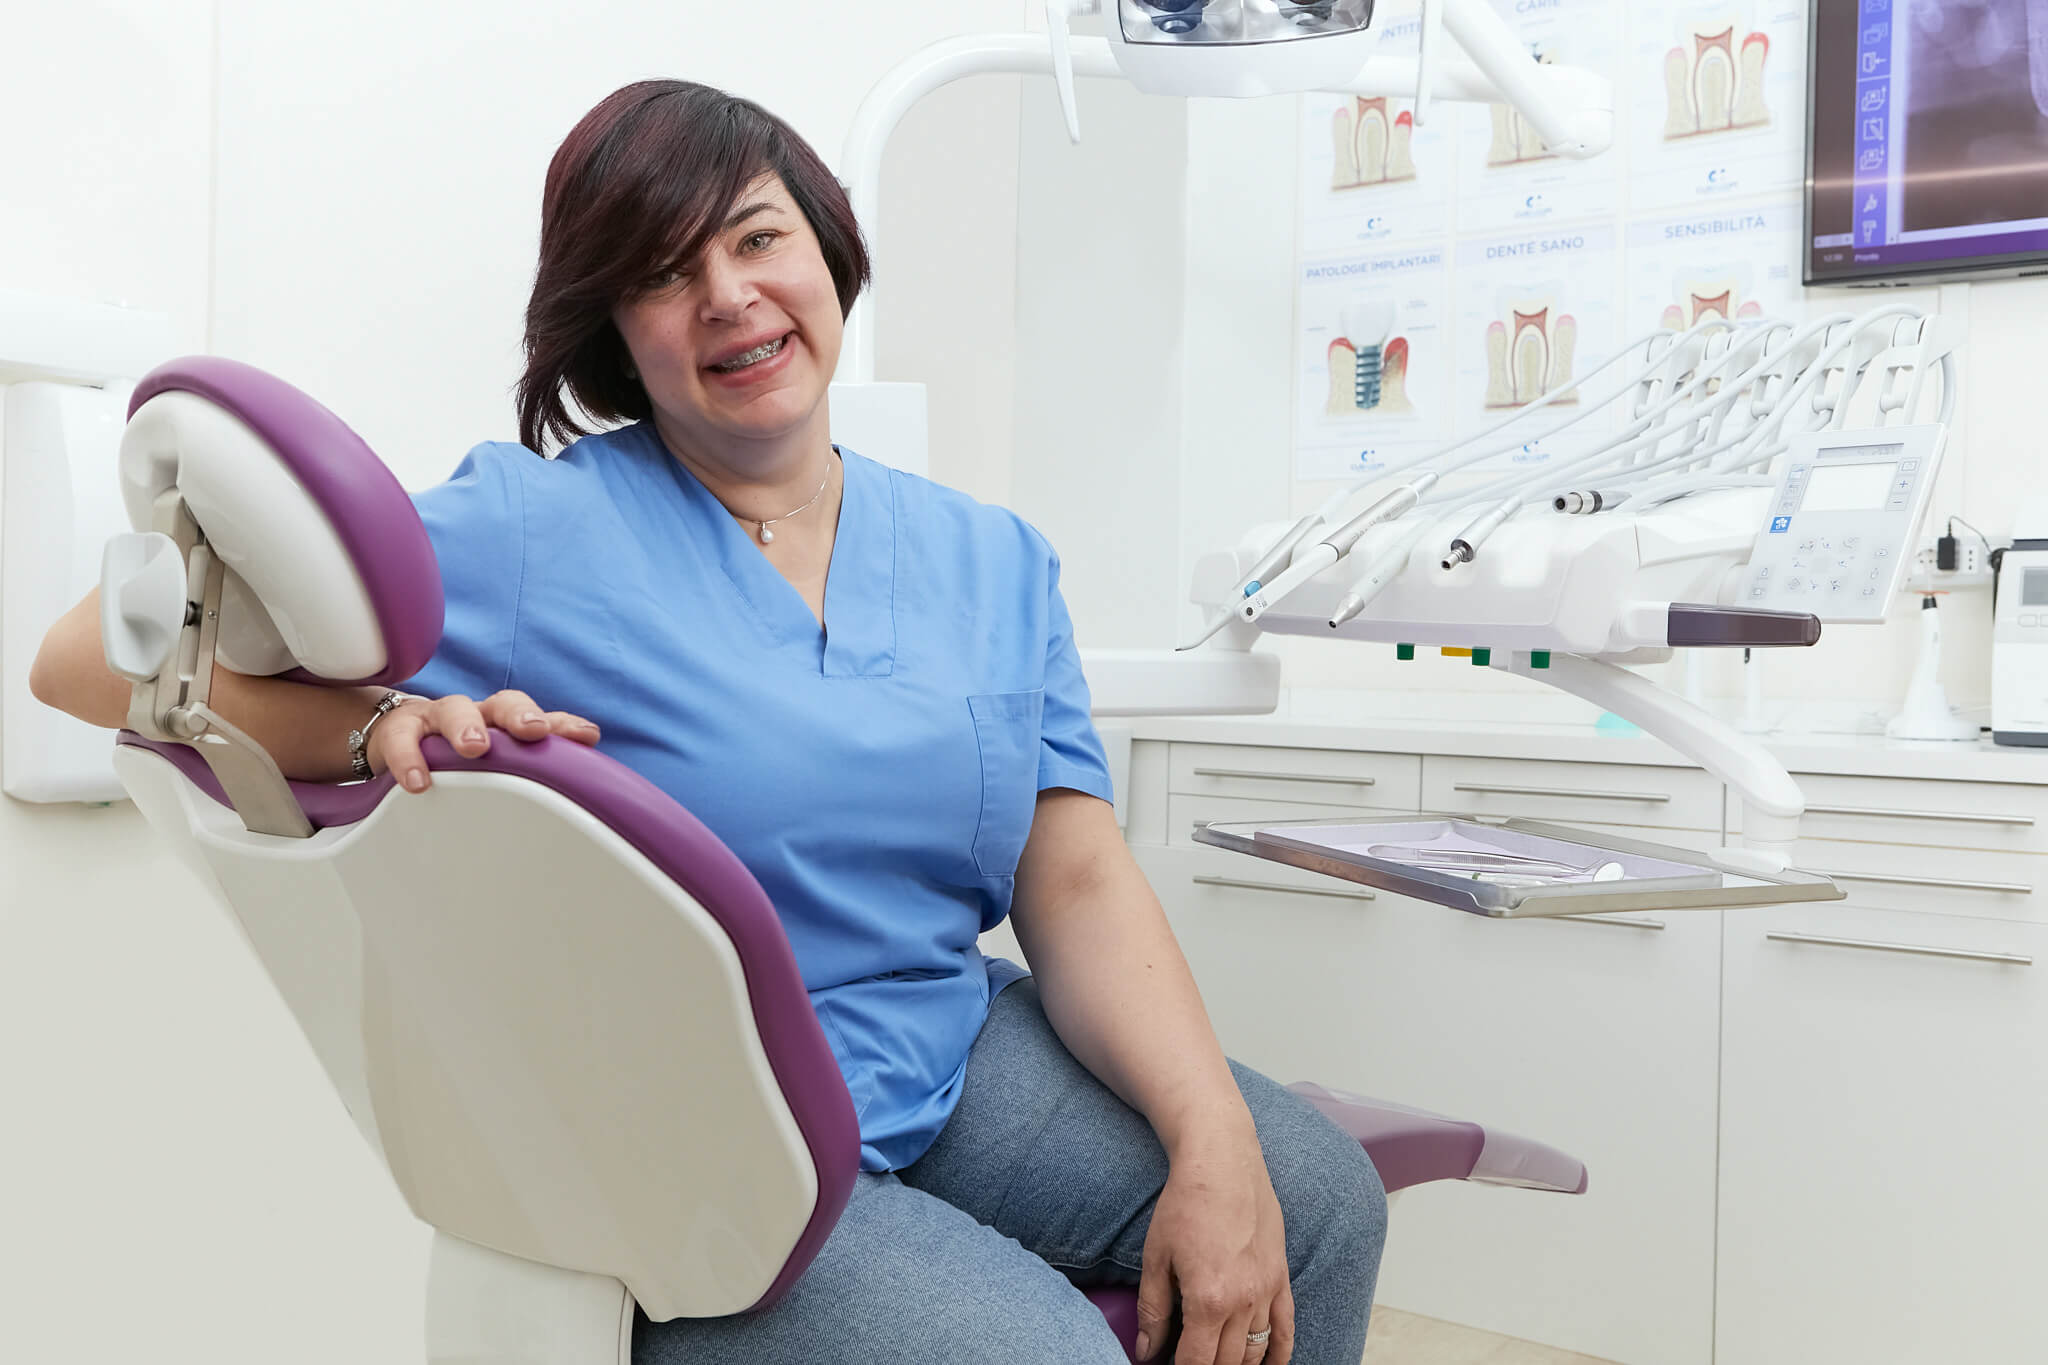 Studio dentistico tg dental roma dentista finocchio borghesiana dott.ssa Claudia pallone